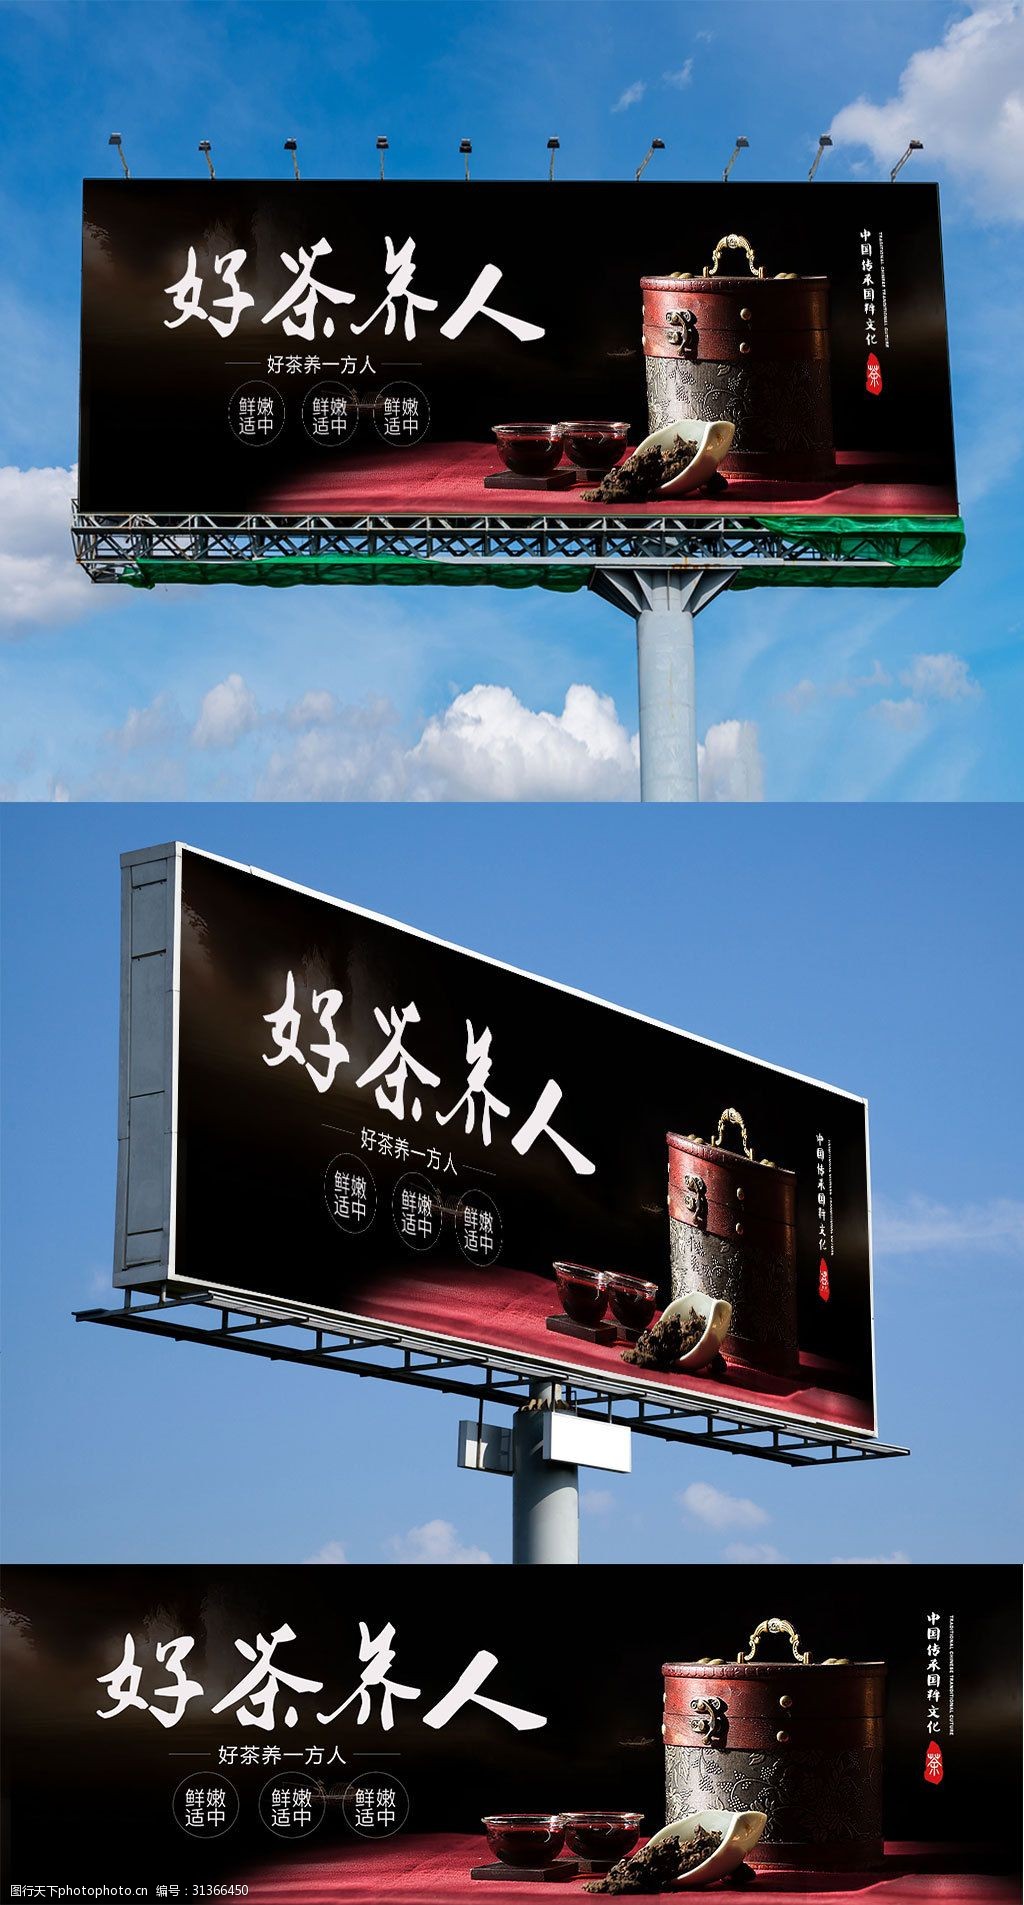 2021年户外广告市场全面复苏户外LED新疆乌鲁木齐高炮广告画面材质广告市场表现亮眼！